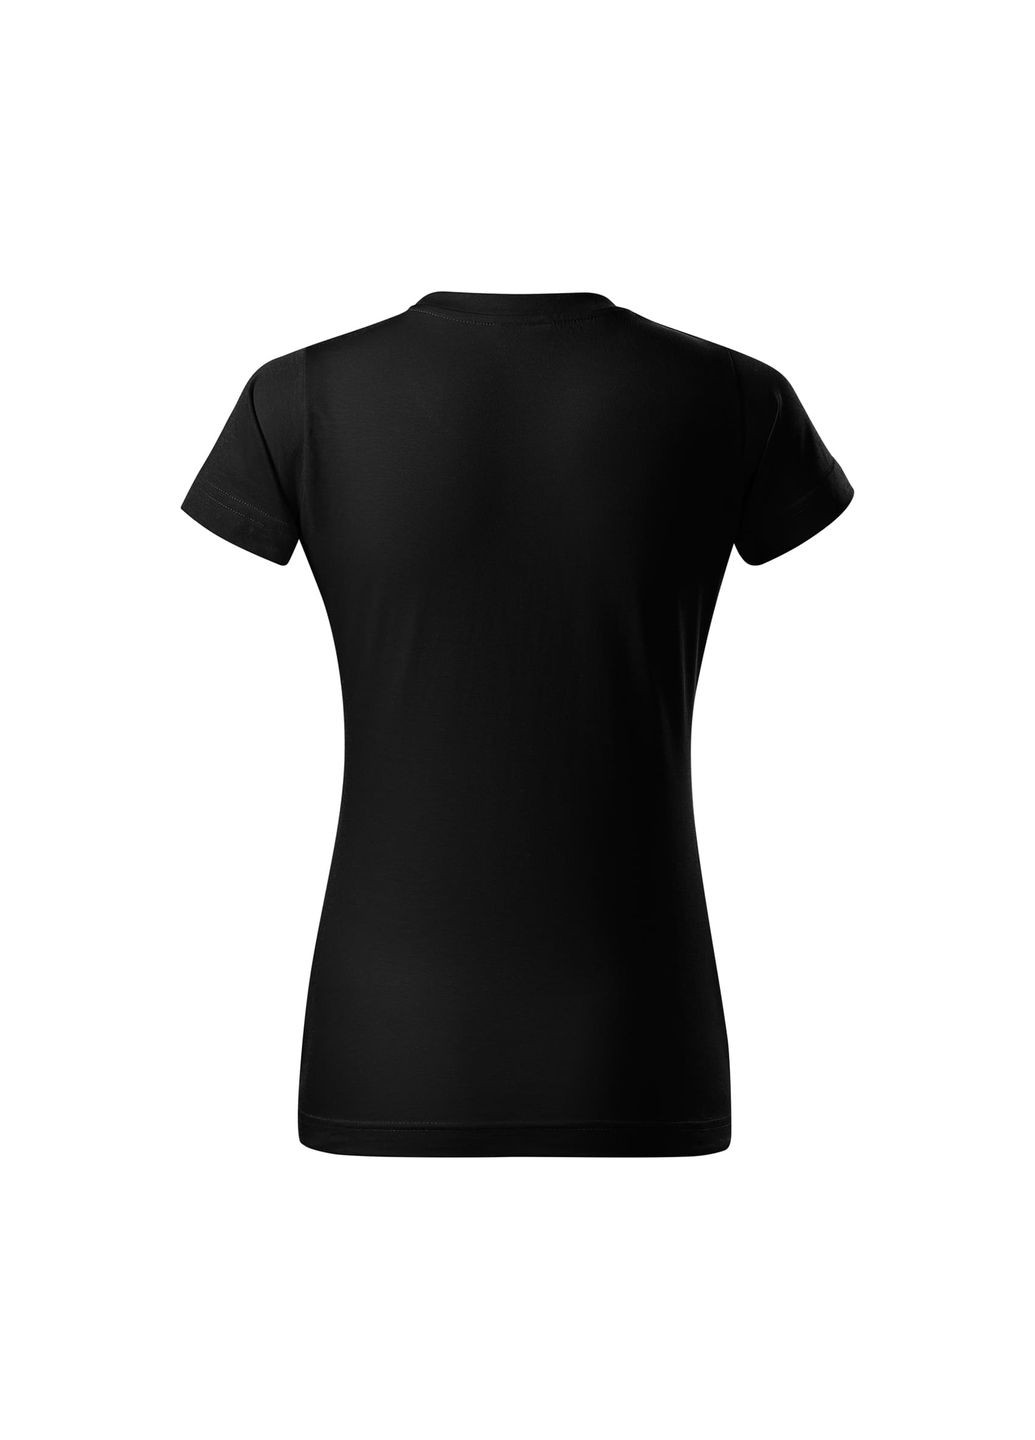 Черная всесезон футболка женская хлопковая однотонная черная 134-01 с коротким рукавом Malfini Basic